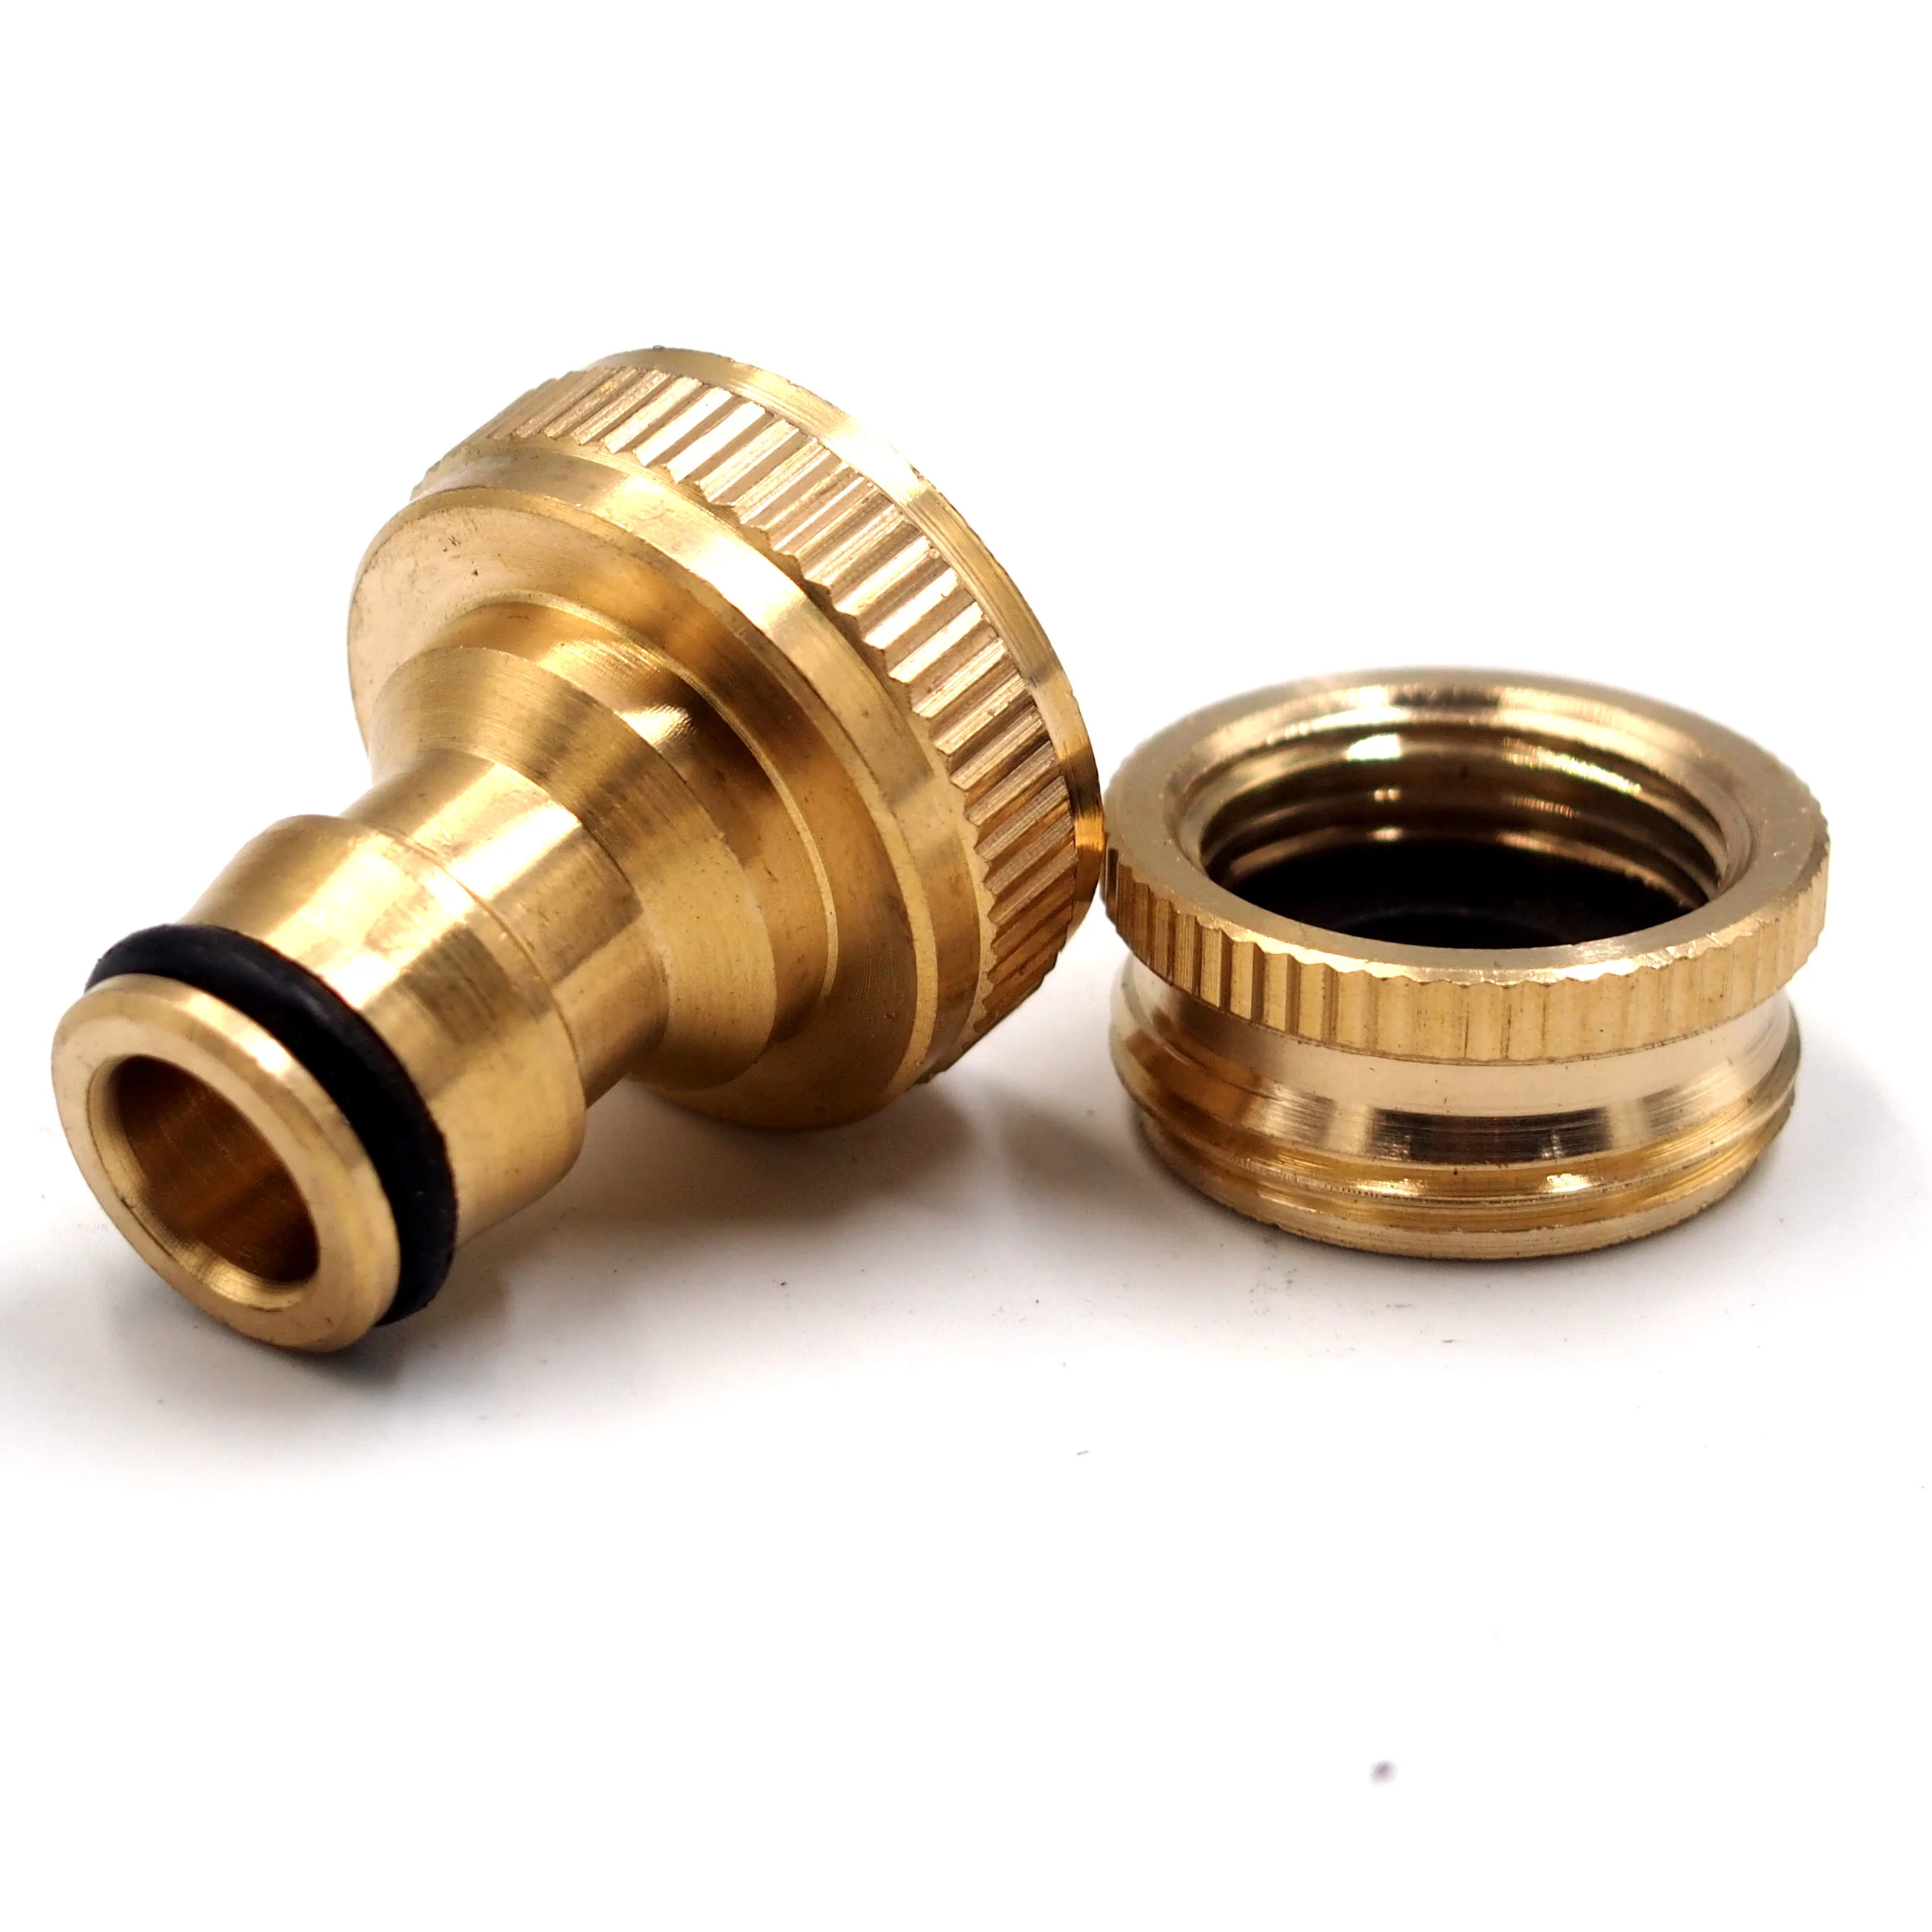 Copper 1/2&3/4 garden hose tap connector